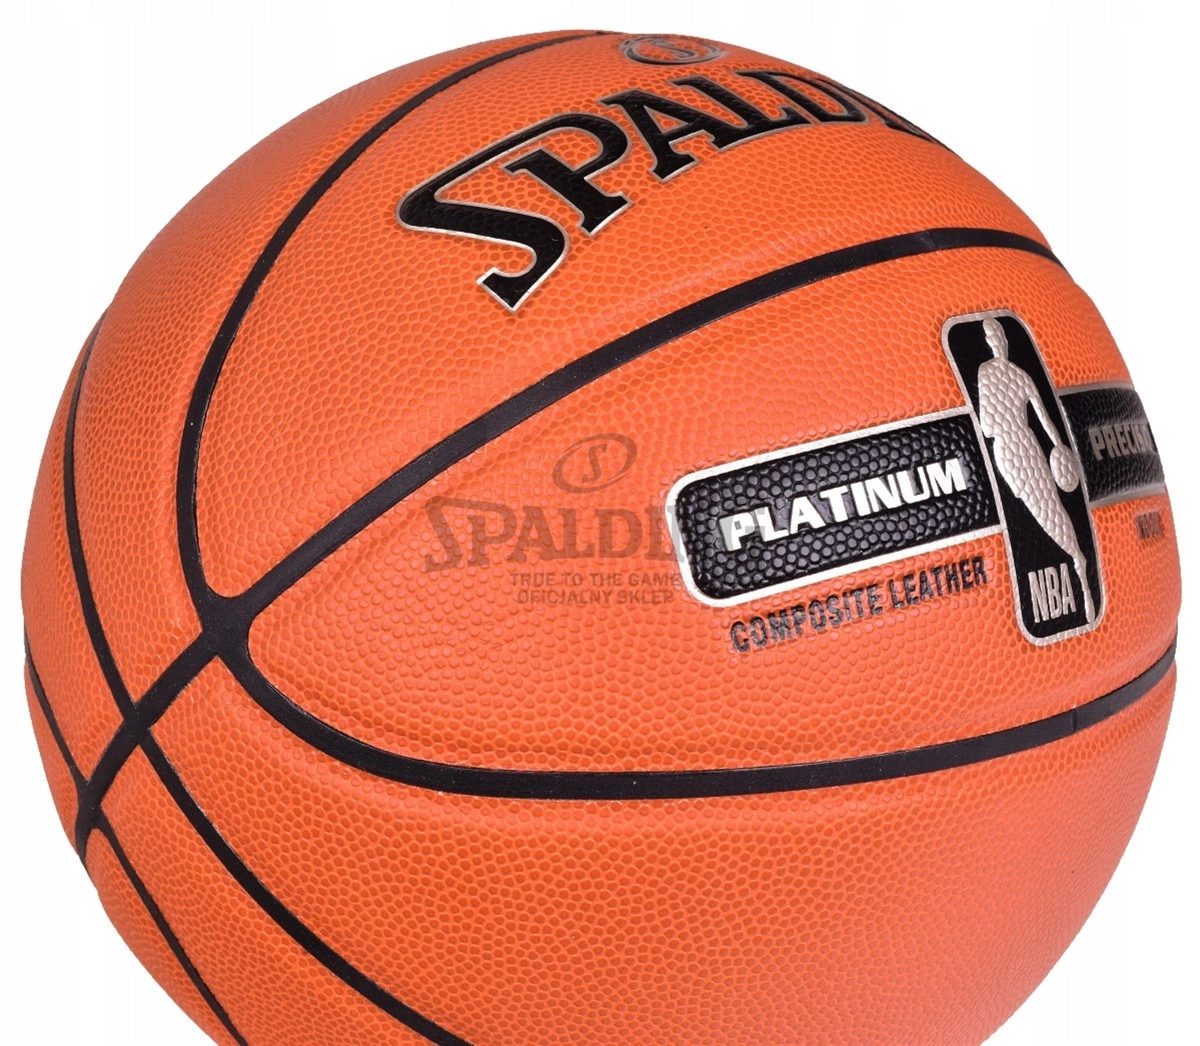 SPALDING NBA Platinum precision koszykówki wózki dla Kup piłka foteliki - 7 zabawki samochodowe - w Neonn dzieci, dziecięce